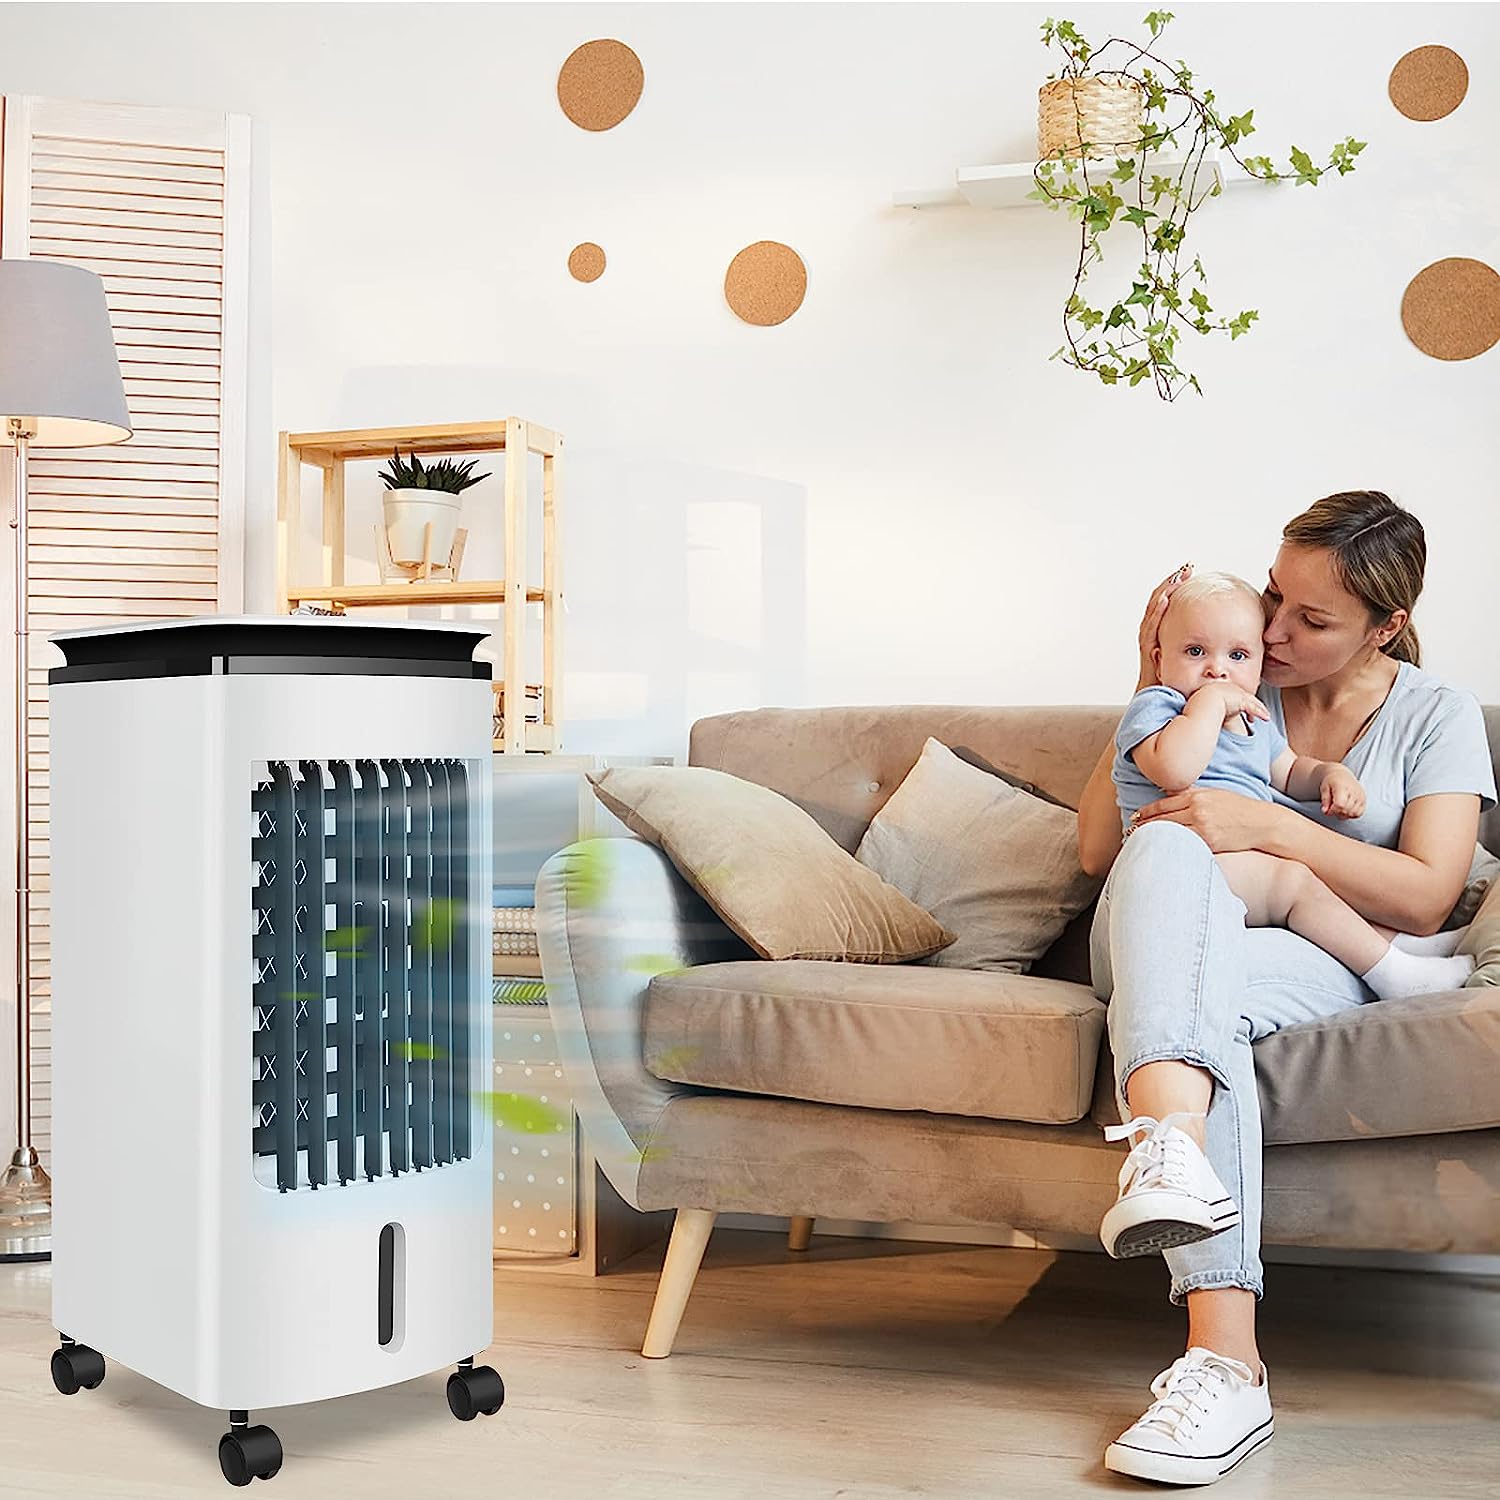 Deminas | Fantastická přenosná klimatizace, zvlhčovač vzduchu a čistička vzduchu 3v1